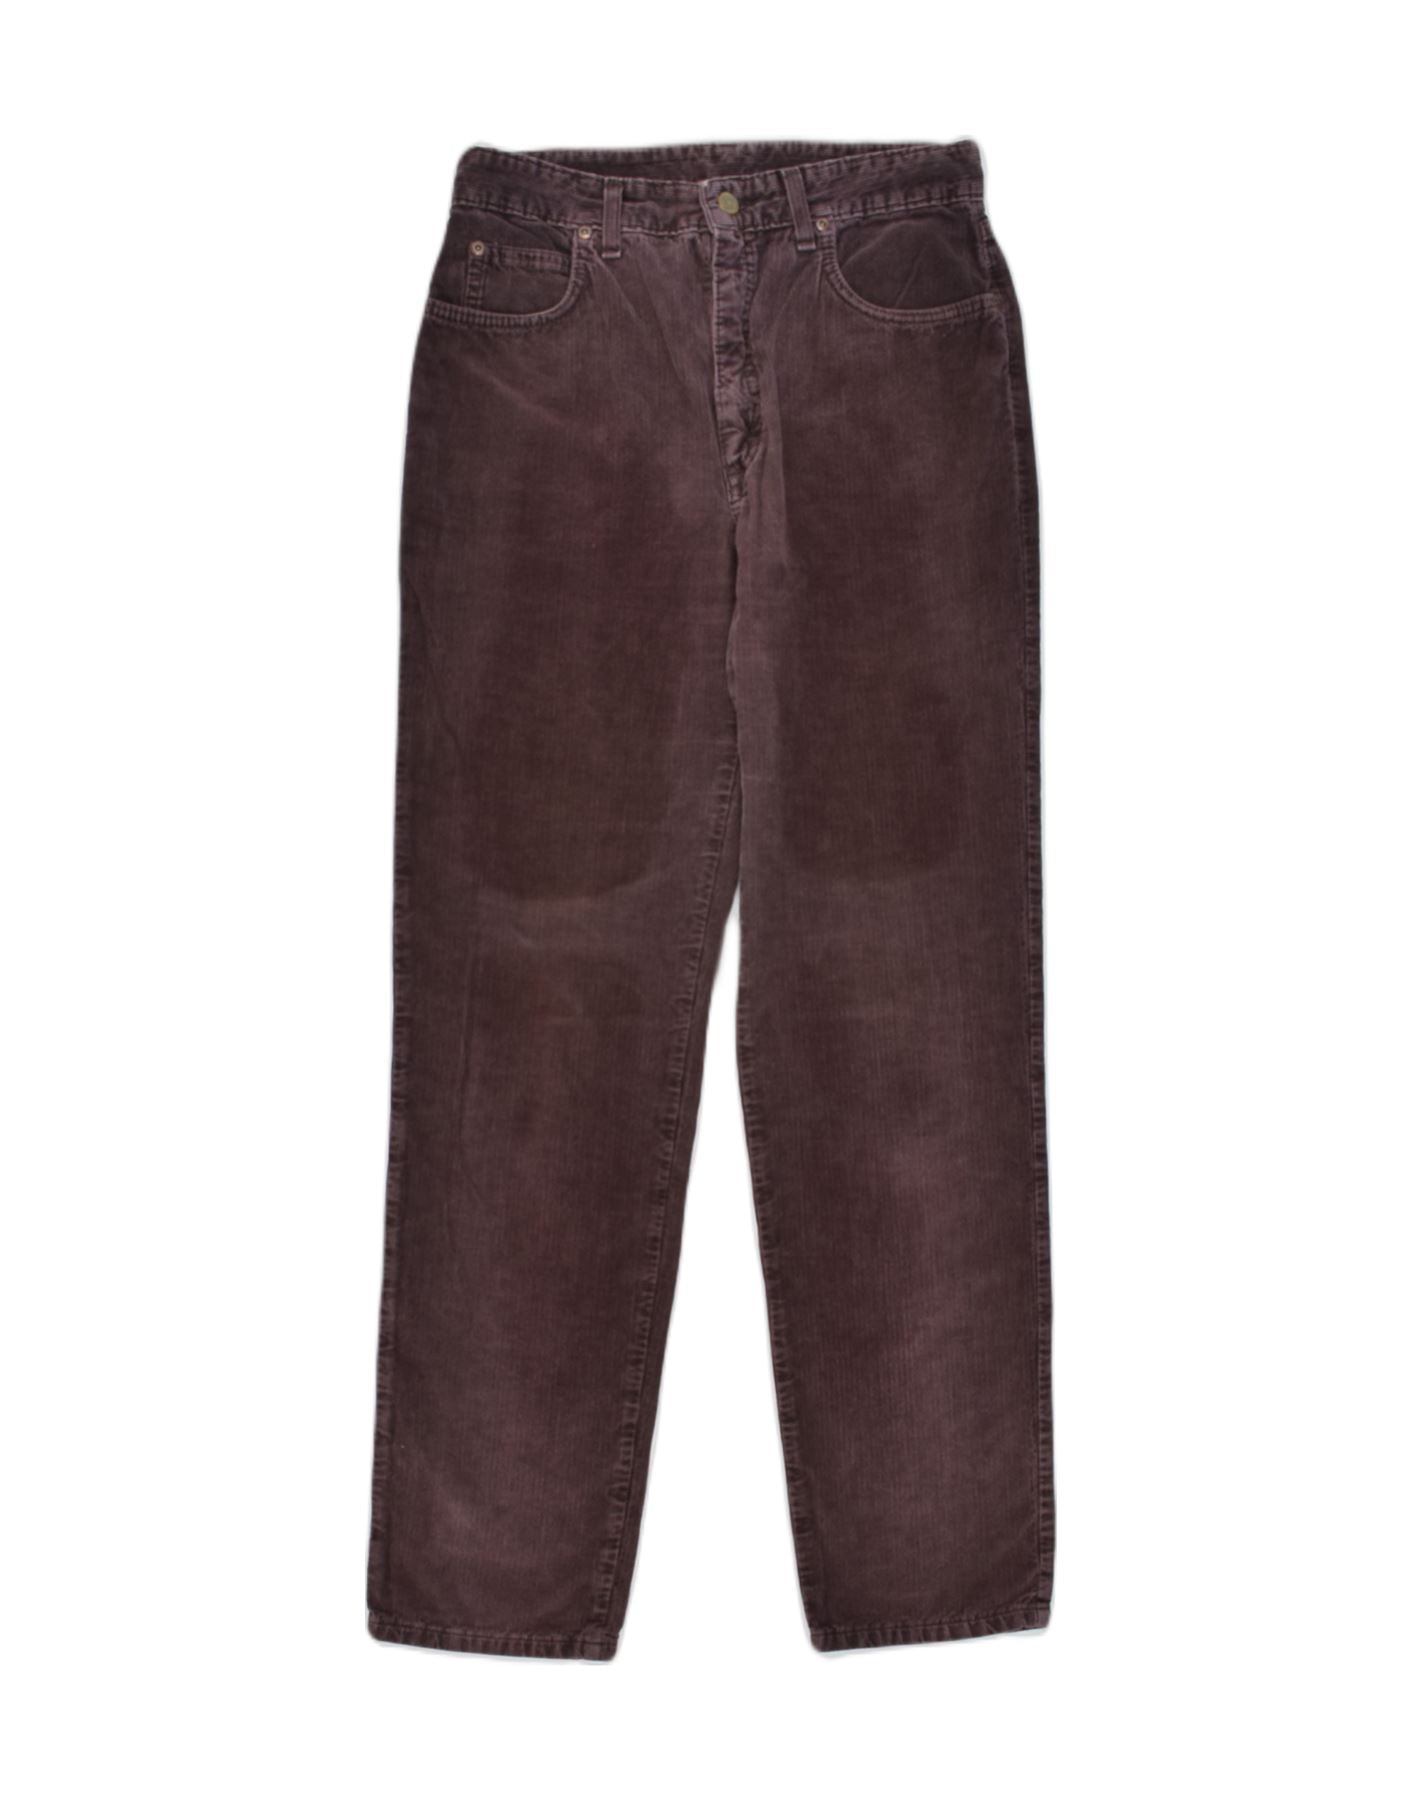 purple corduroy pants 💜 plum/maroon corduroy pants... - Depop